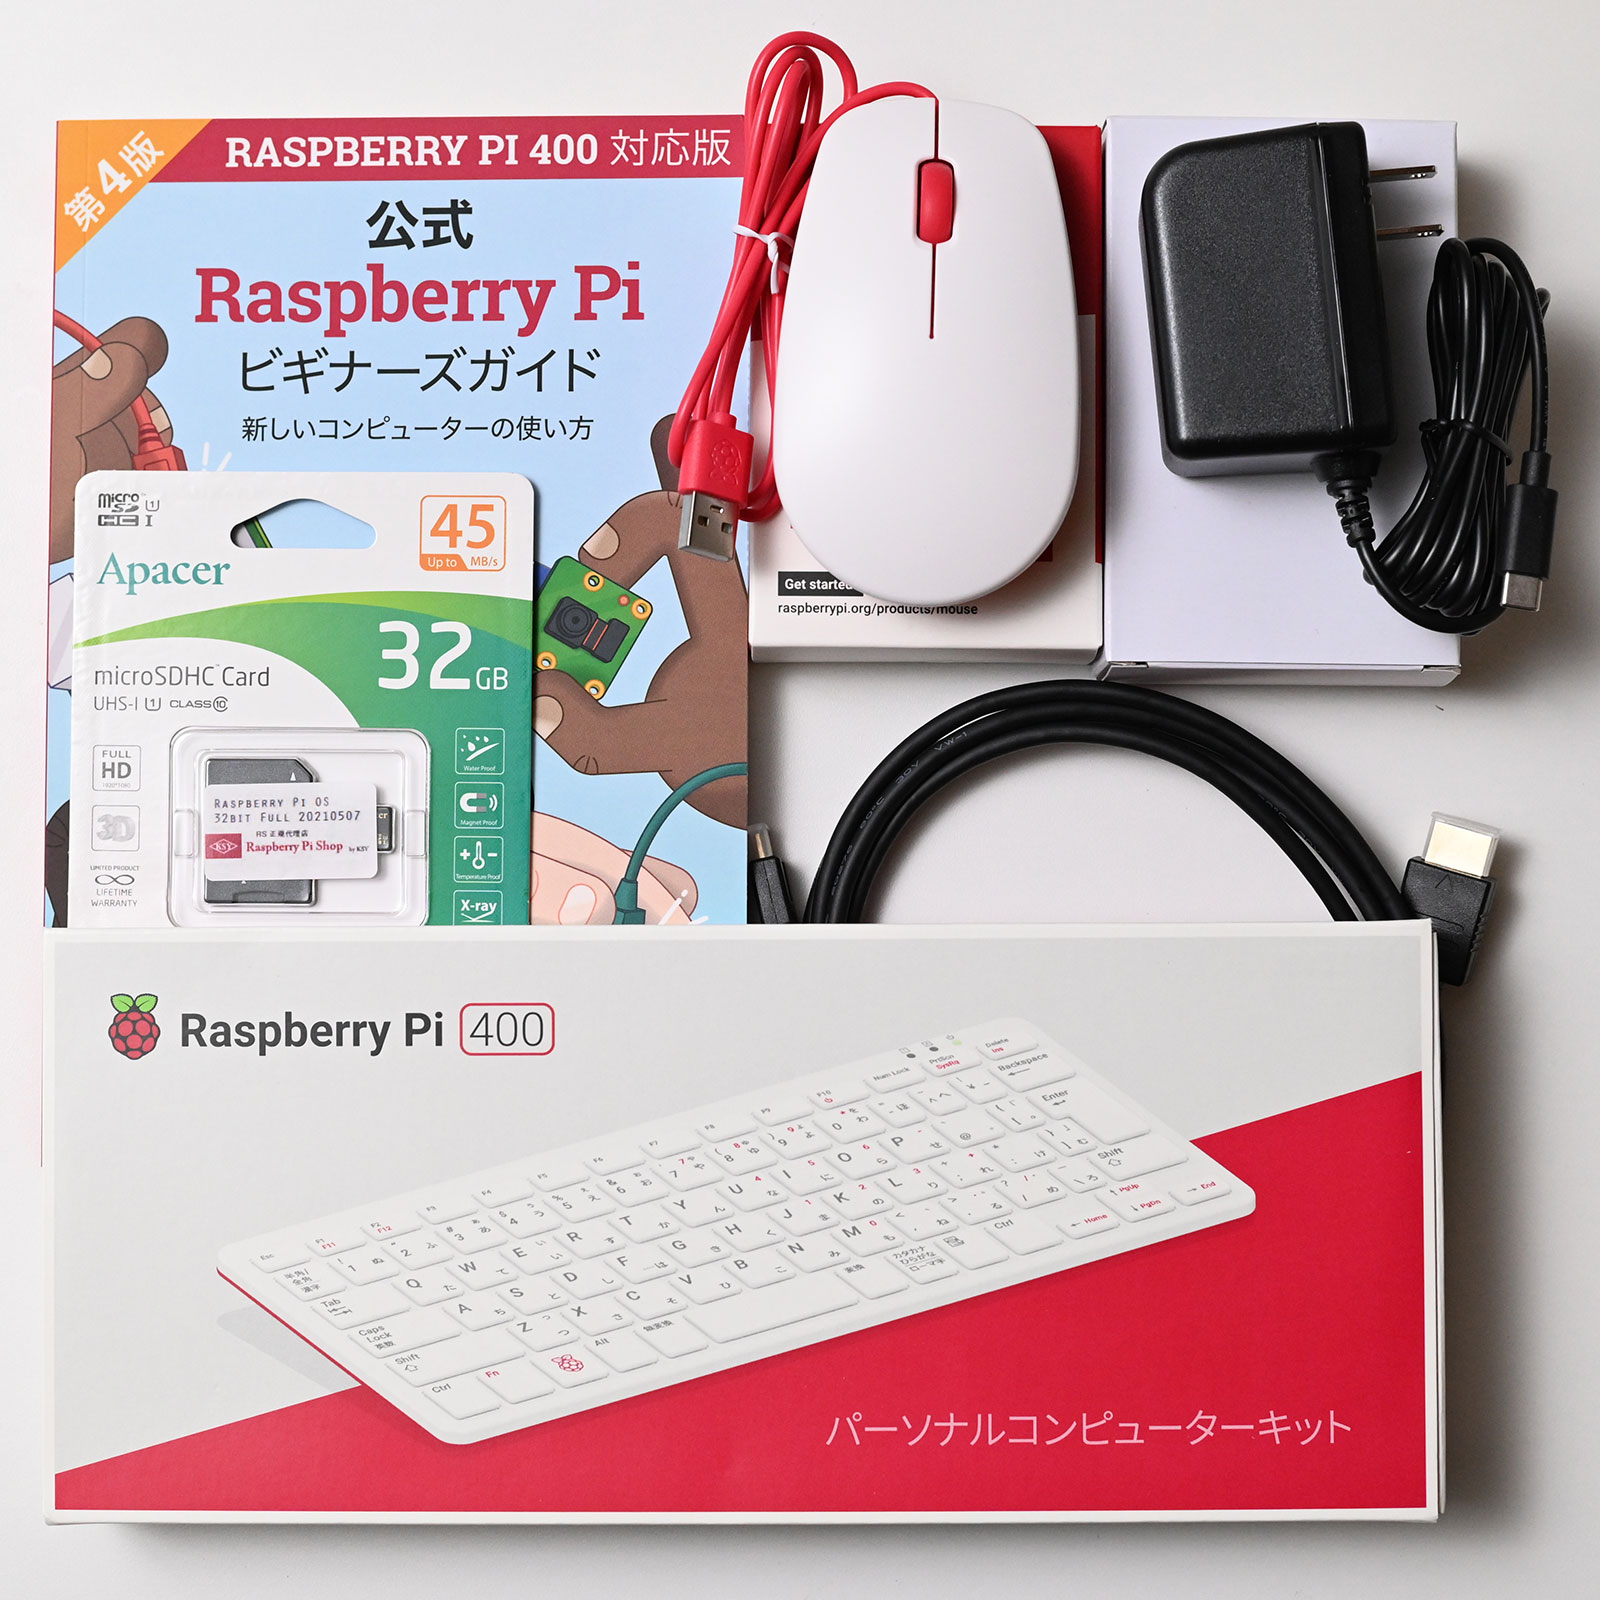 販売再開!これは買うベシ!Raspberry Pi 400 日本語版 - PCまなぶ